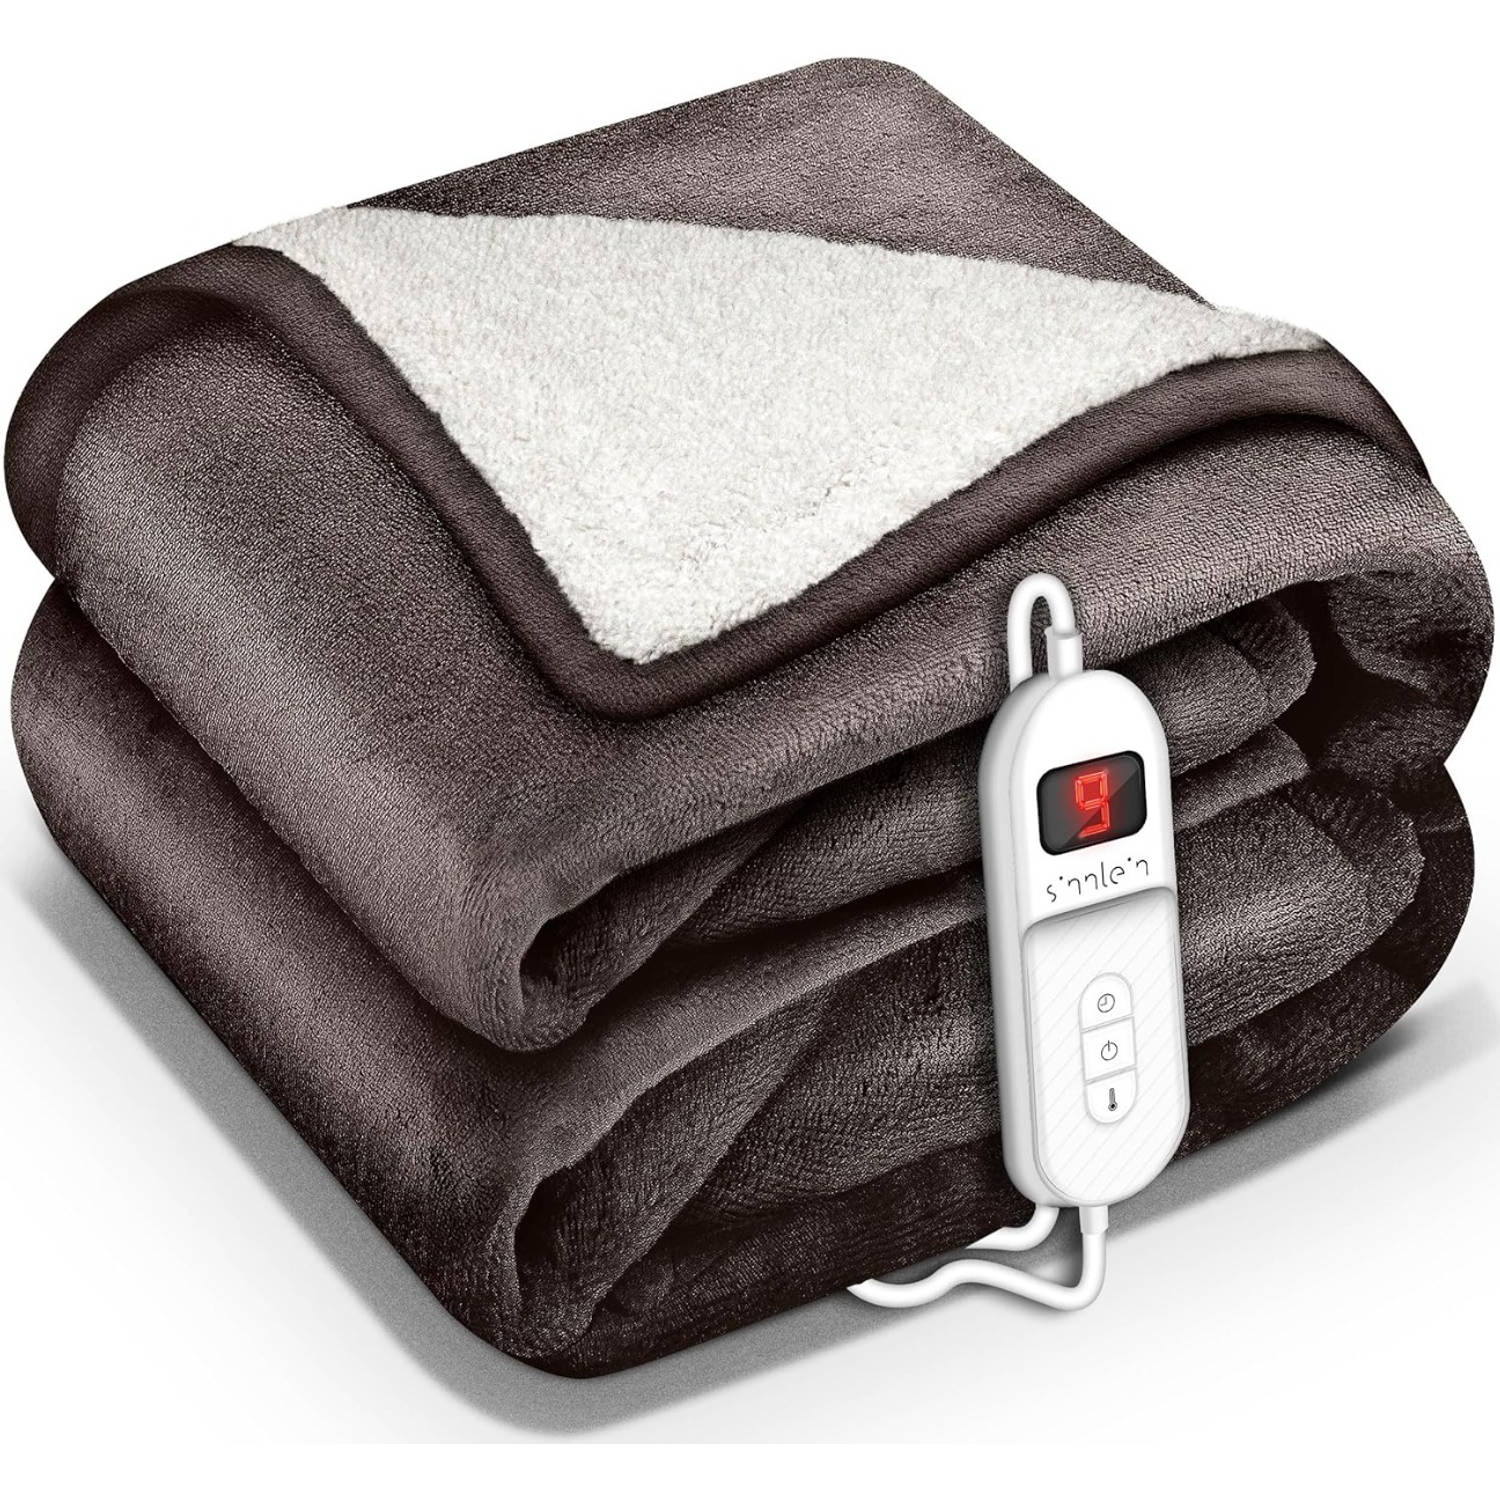 Sinnlein- Elektrische deken met automatische uitschakeling, bruin, 180x130 cm, warmtedeken met 9 temperatuurniveaus,...